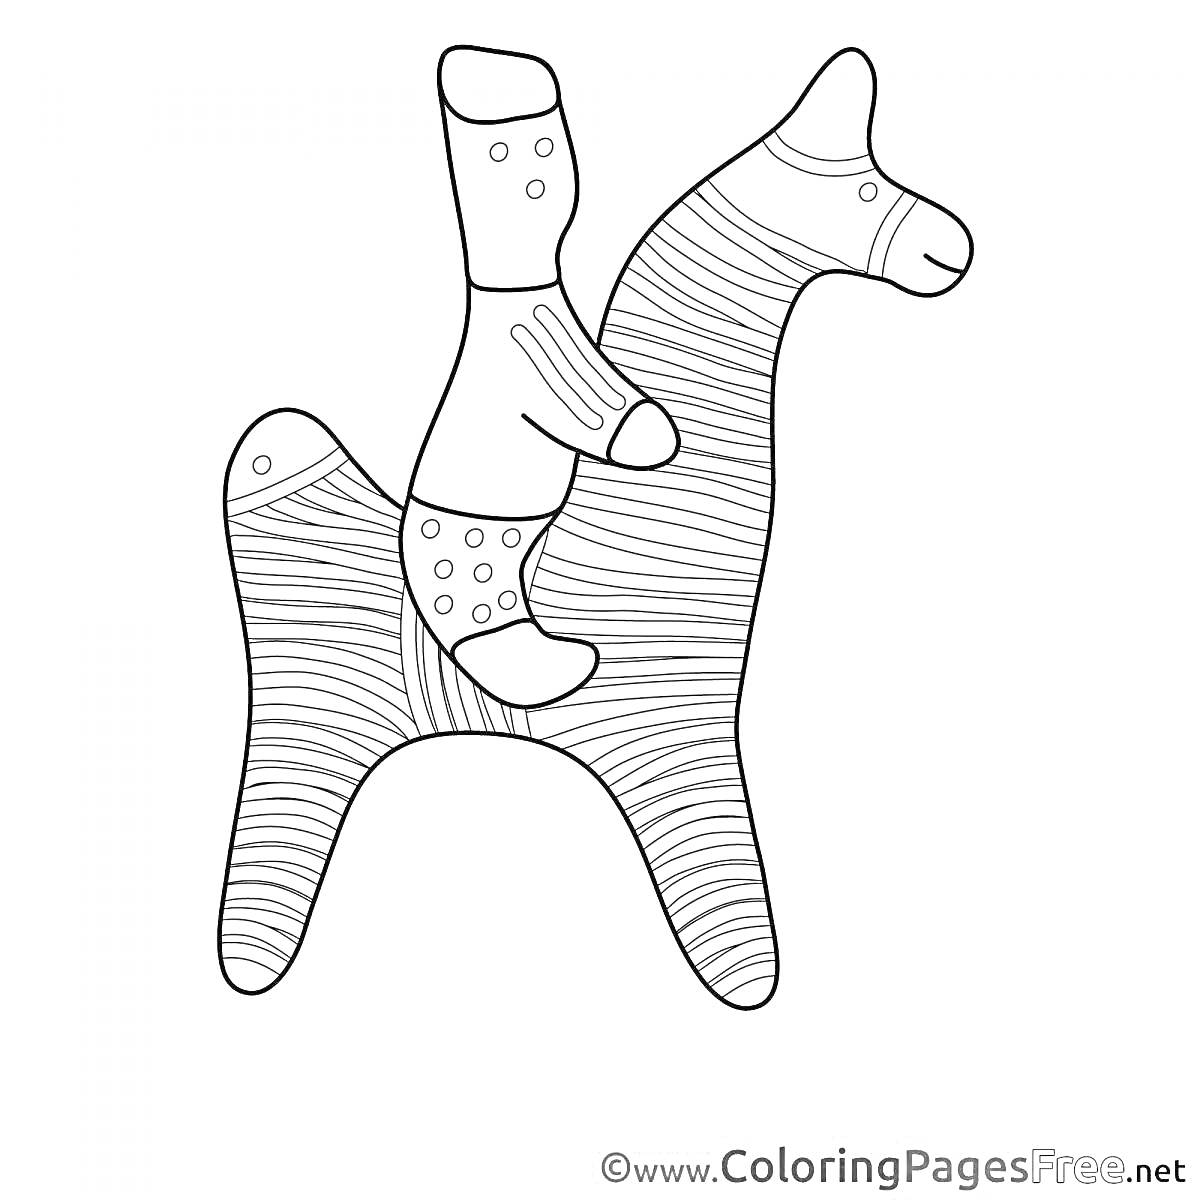 Раскраска Филимоновская игрушка - наездник на лошади с полосками и точками